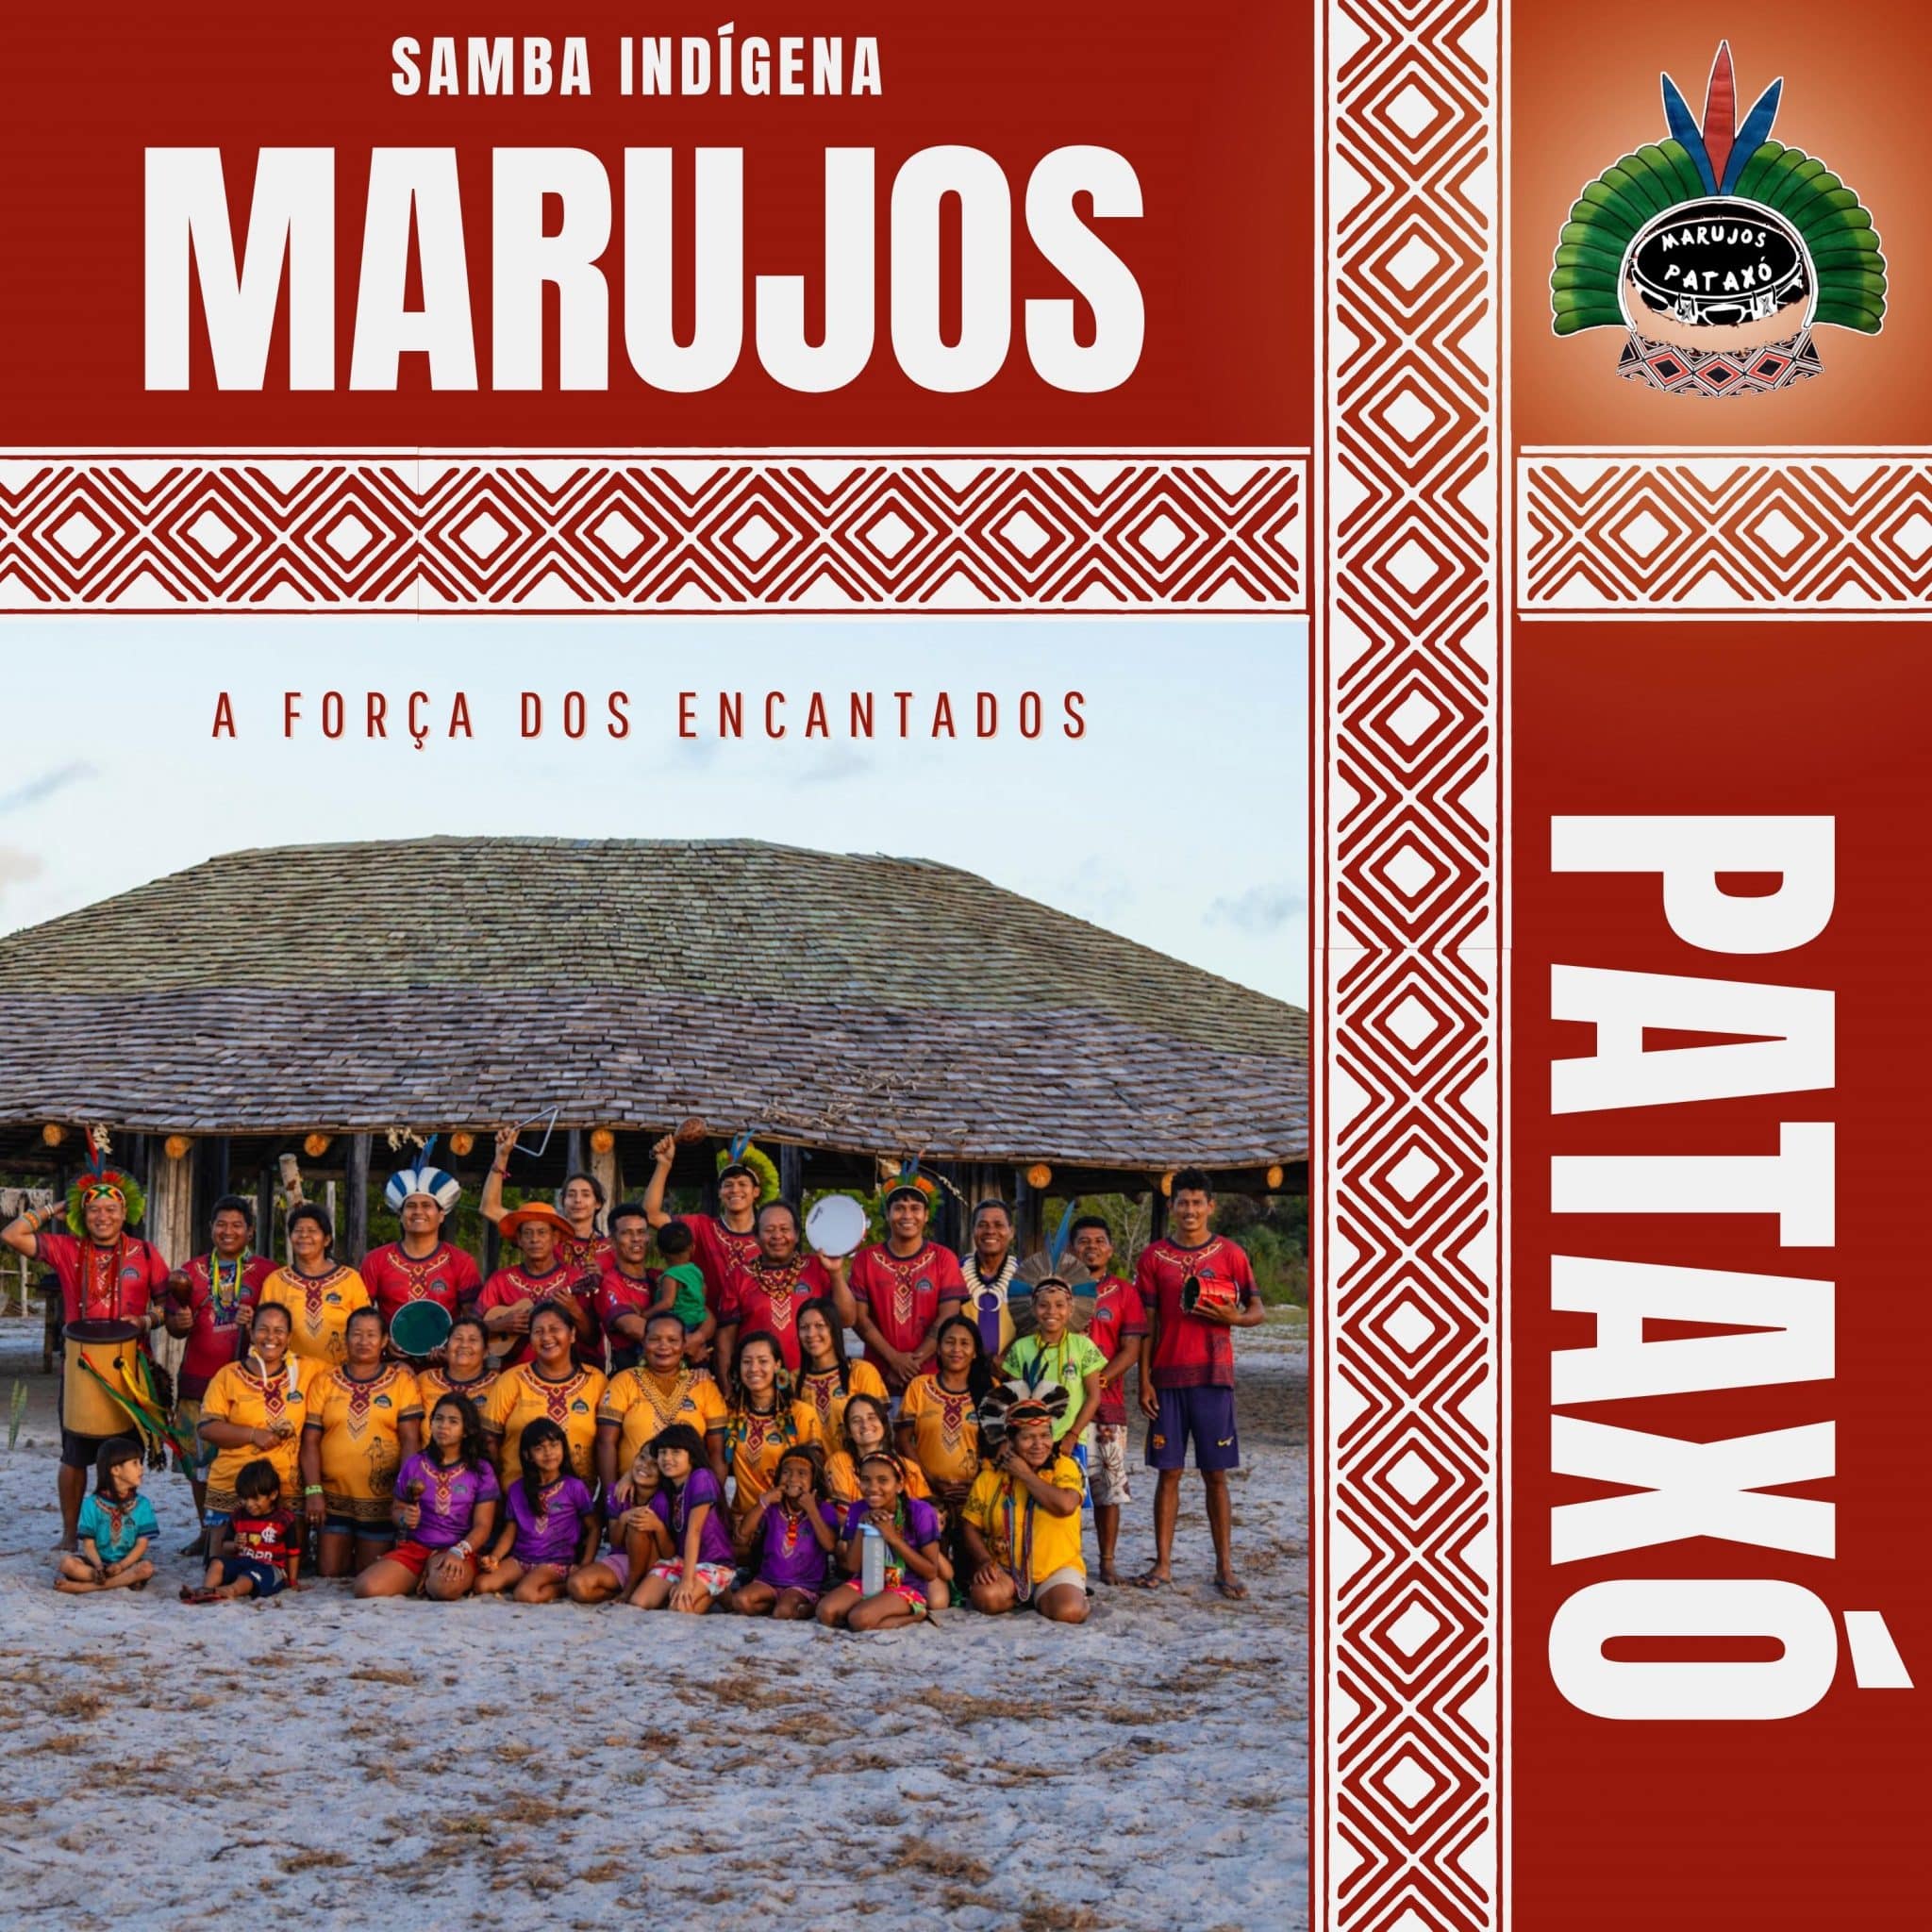 revistaprosaversoearte.com - 'A Força dos Encantados', álbum com sambas indígenas dos Marujos Pataxó